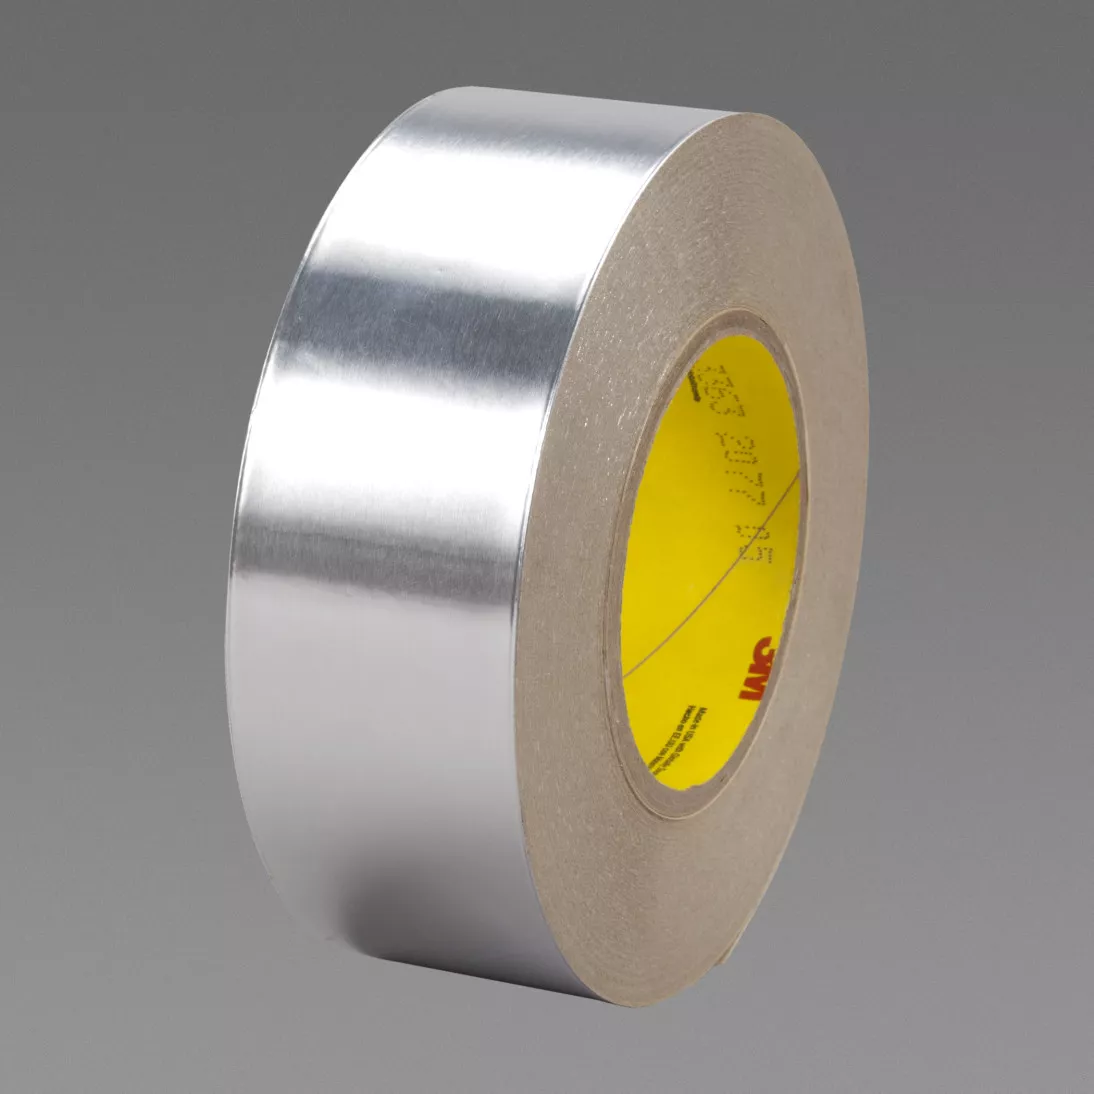 3M™ Aluminum Foil Tape 3363, Silver, 60 in x 250 yd, 5 mil, 1 roll per
case